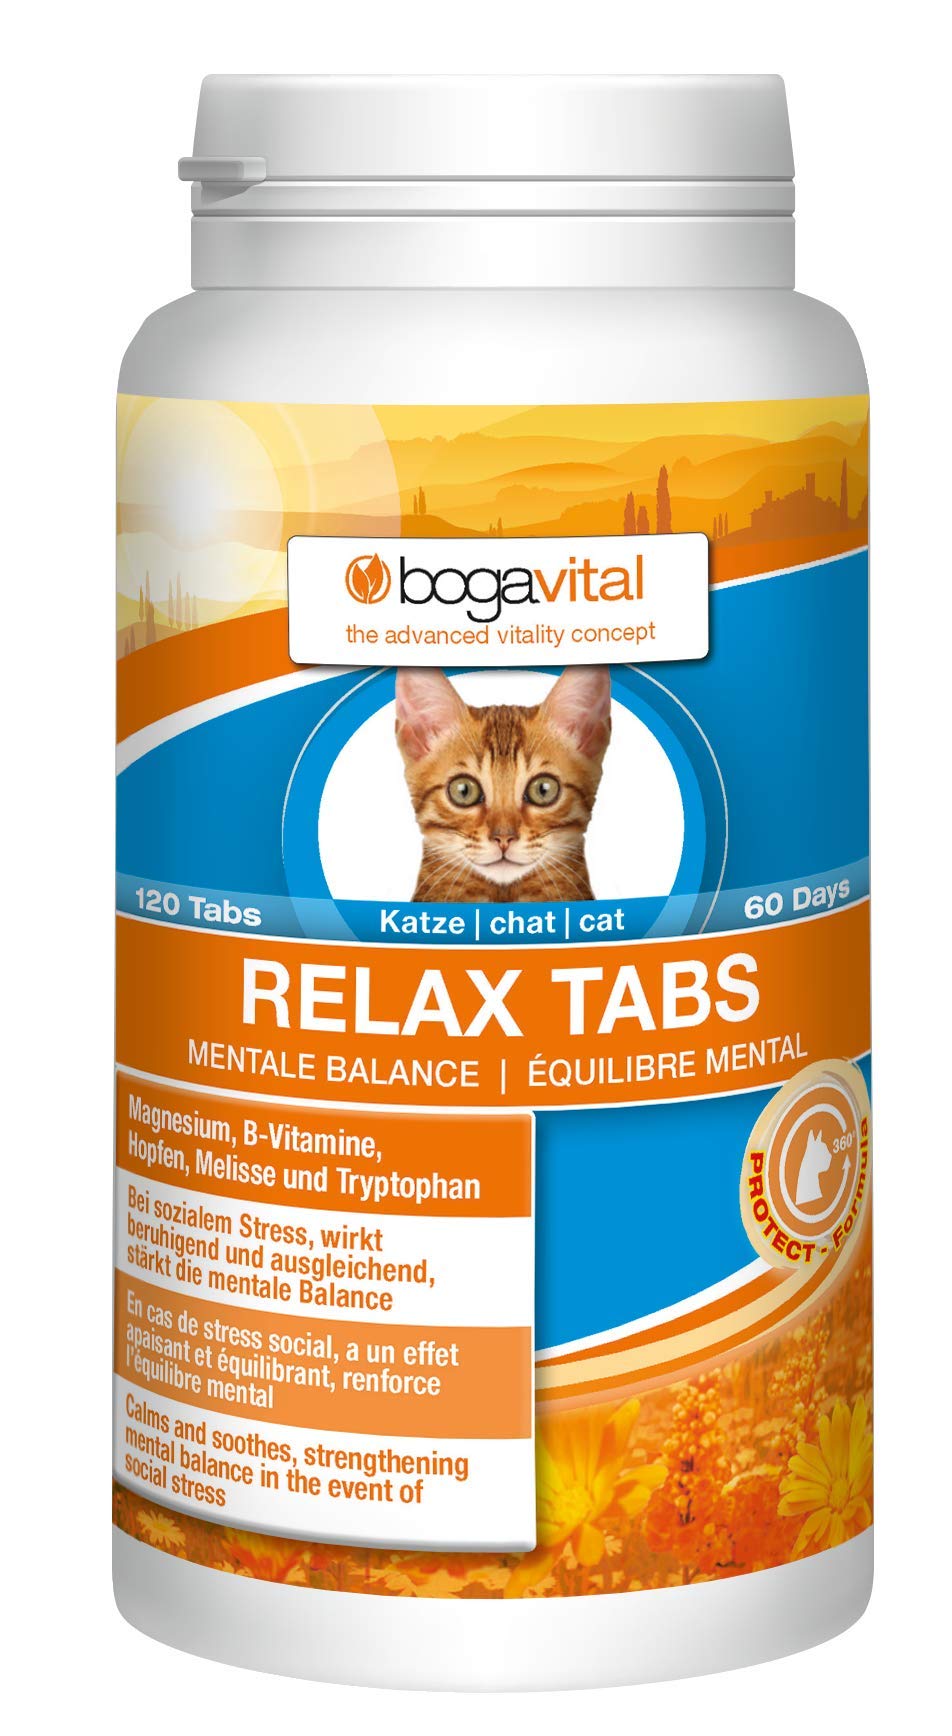 Bogavital Relax Tabs Cat, pack of 1 (1 x 84 g) - PawsPlanet Australia